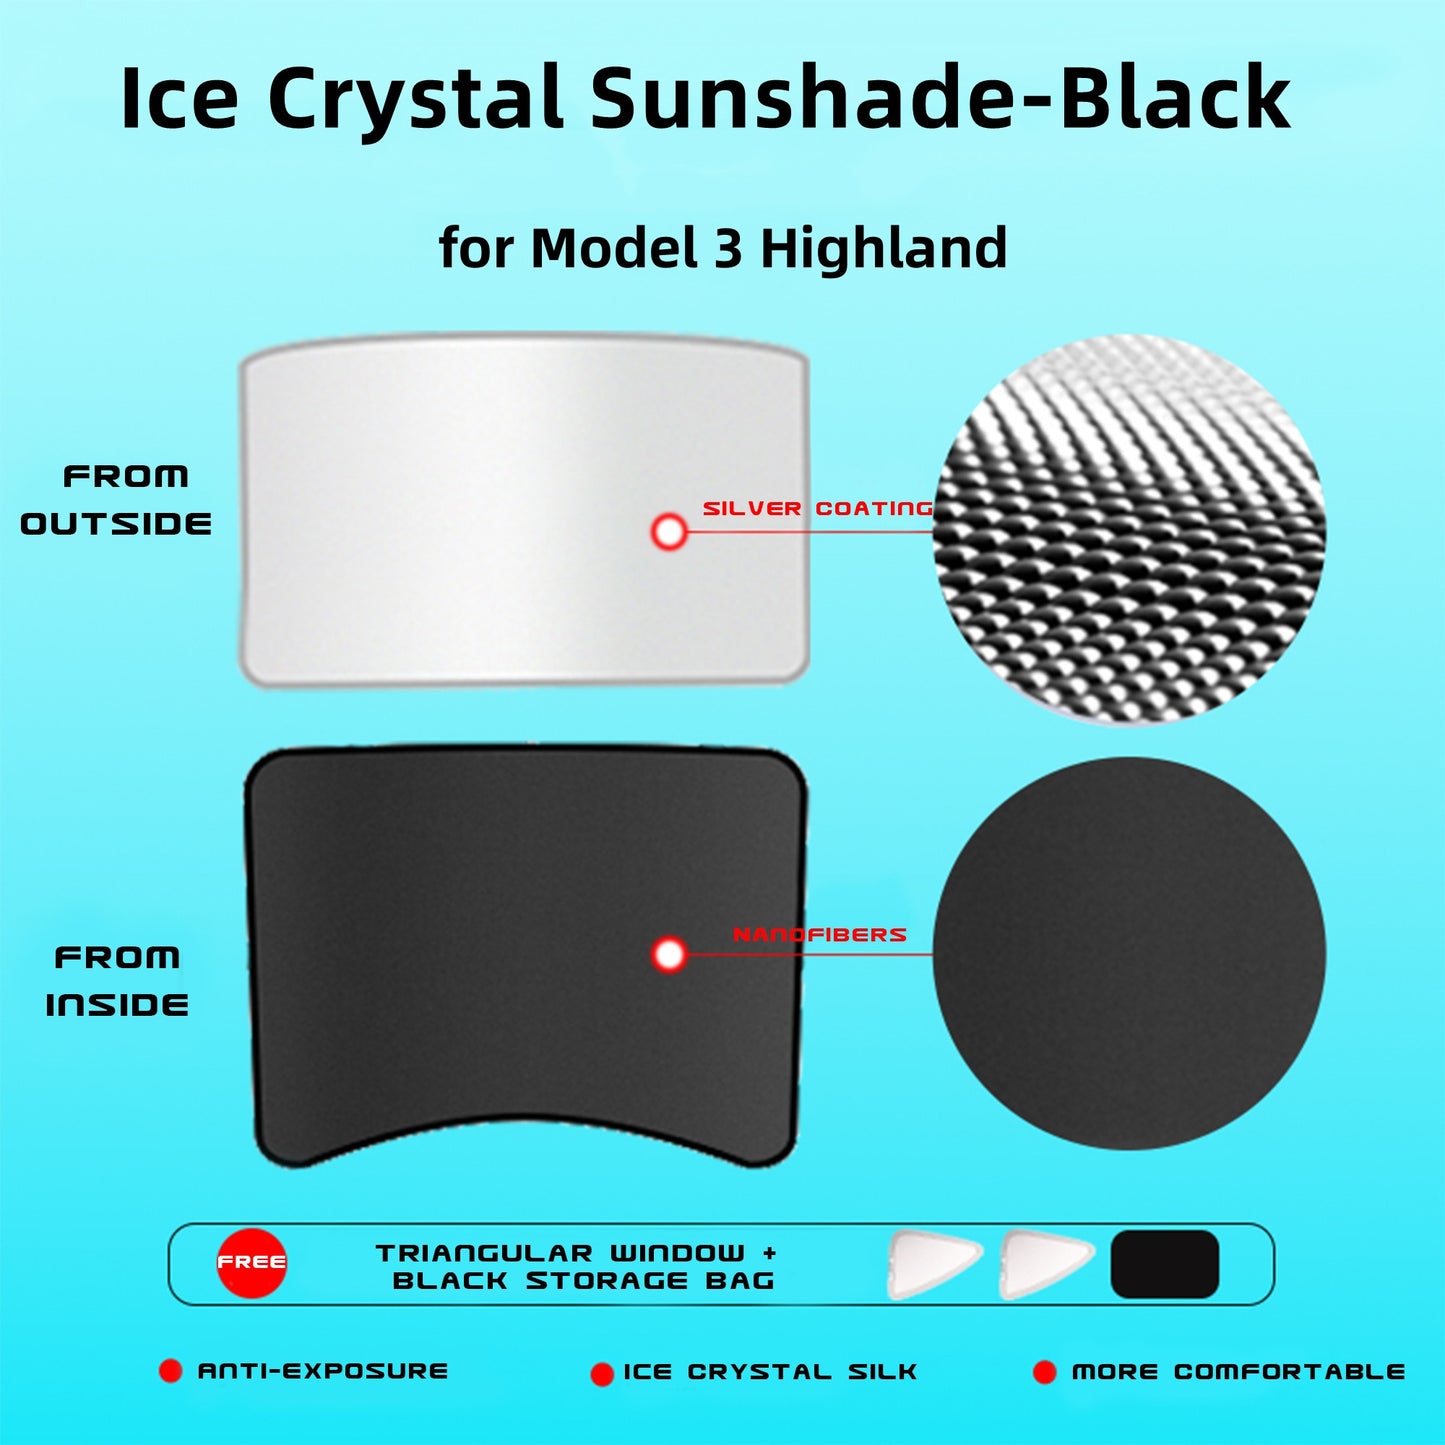 Tendine parasole per tettuccio apribile con set di coperture in pellicola isolante UV/calore, parasole pieghevoli in cristallo di ghiaccio per Model 3 e Model 3 Highland